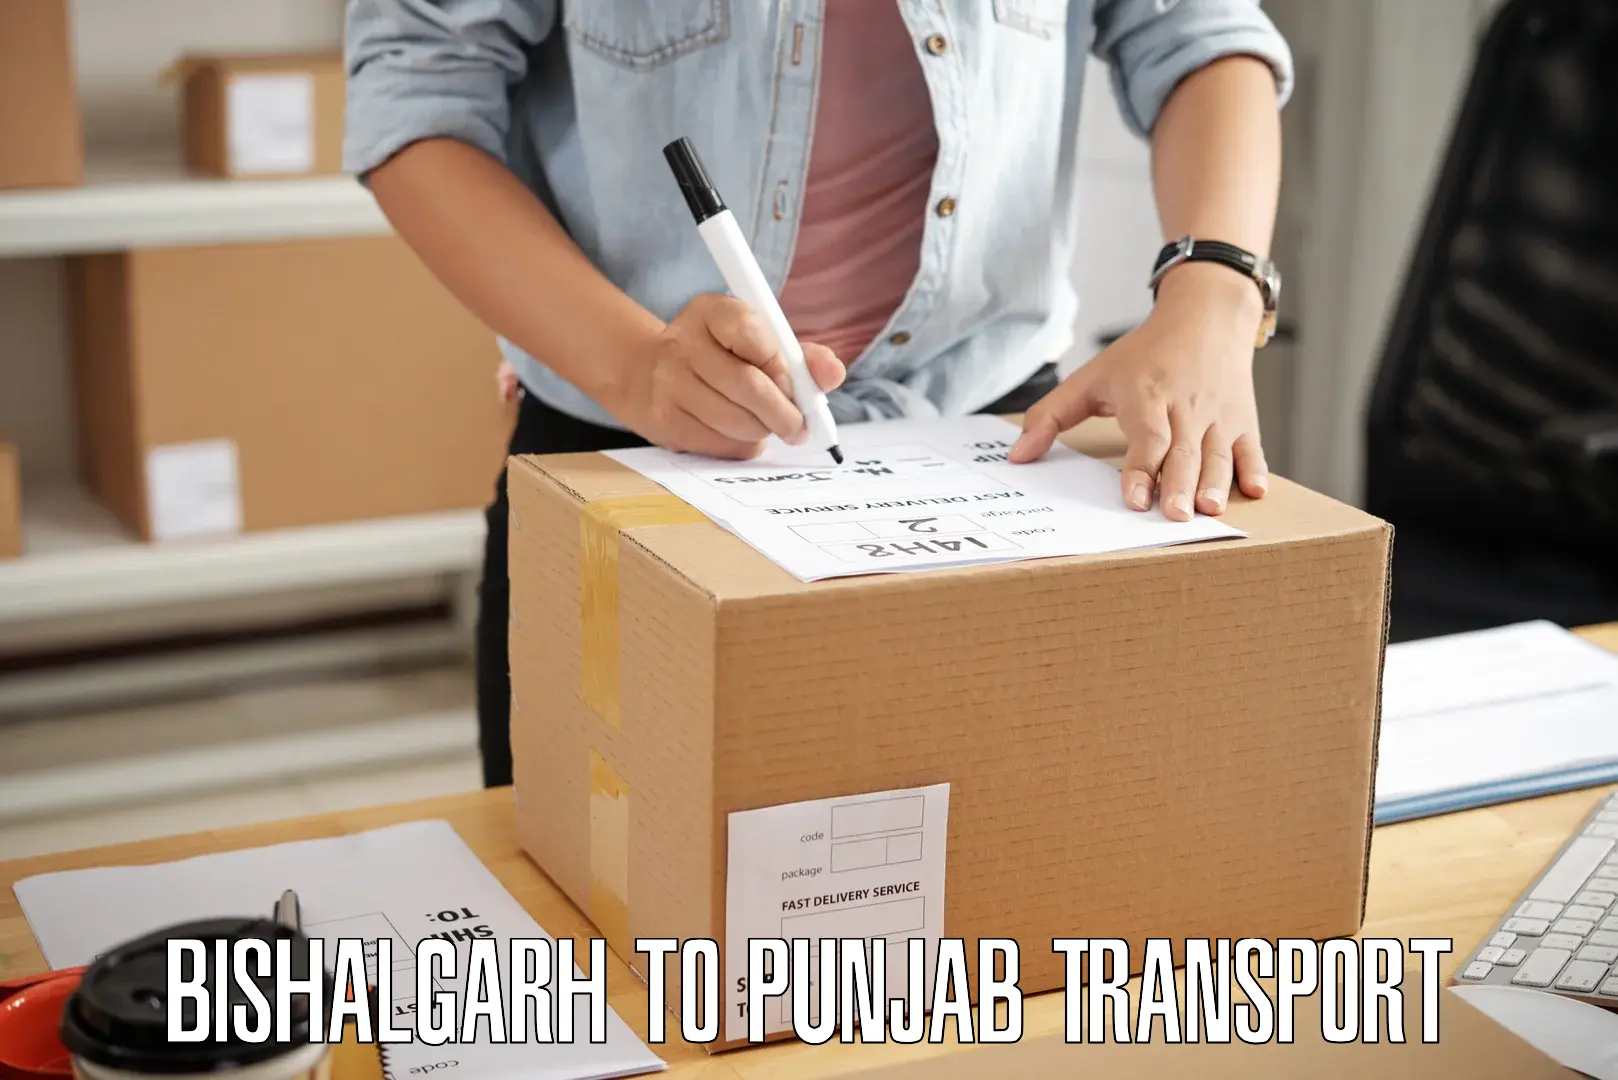 Two wheeler parcel service Bishalgarh to Adampur Jalandhar